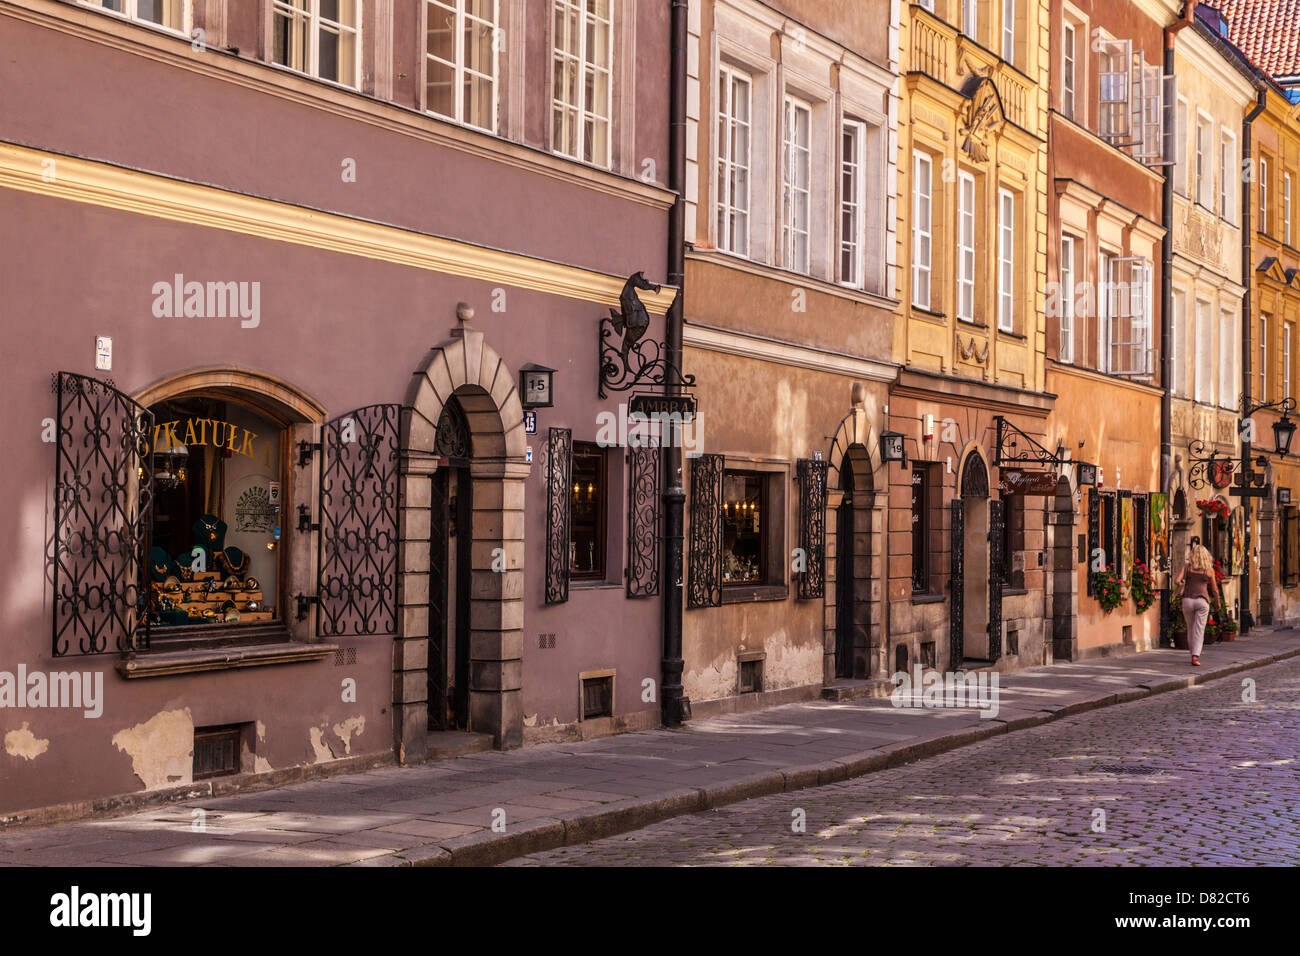 Kleinen gepflasterten Seitenstraße Stary Rynek (Alter Marktplatz), in der historischen Bezirk von Stare Miasto (Altstadt) in Warschau, Polen. Stockfoto